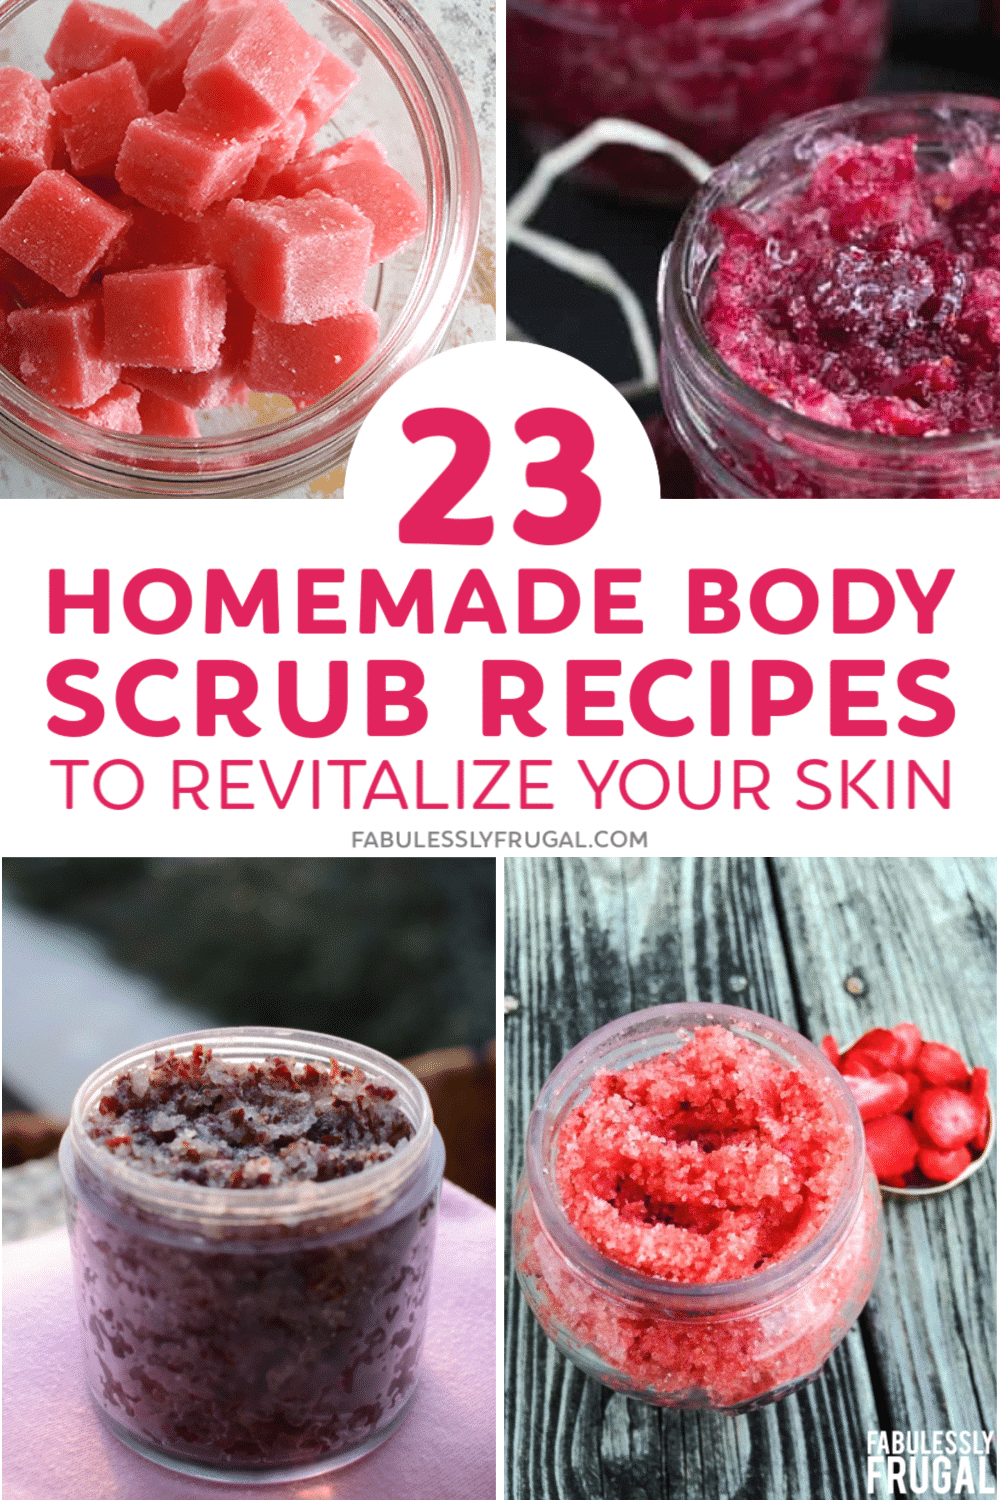 Homemade body scrub recipes